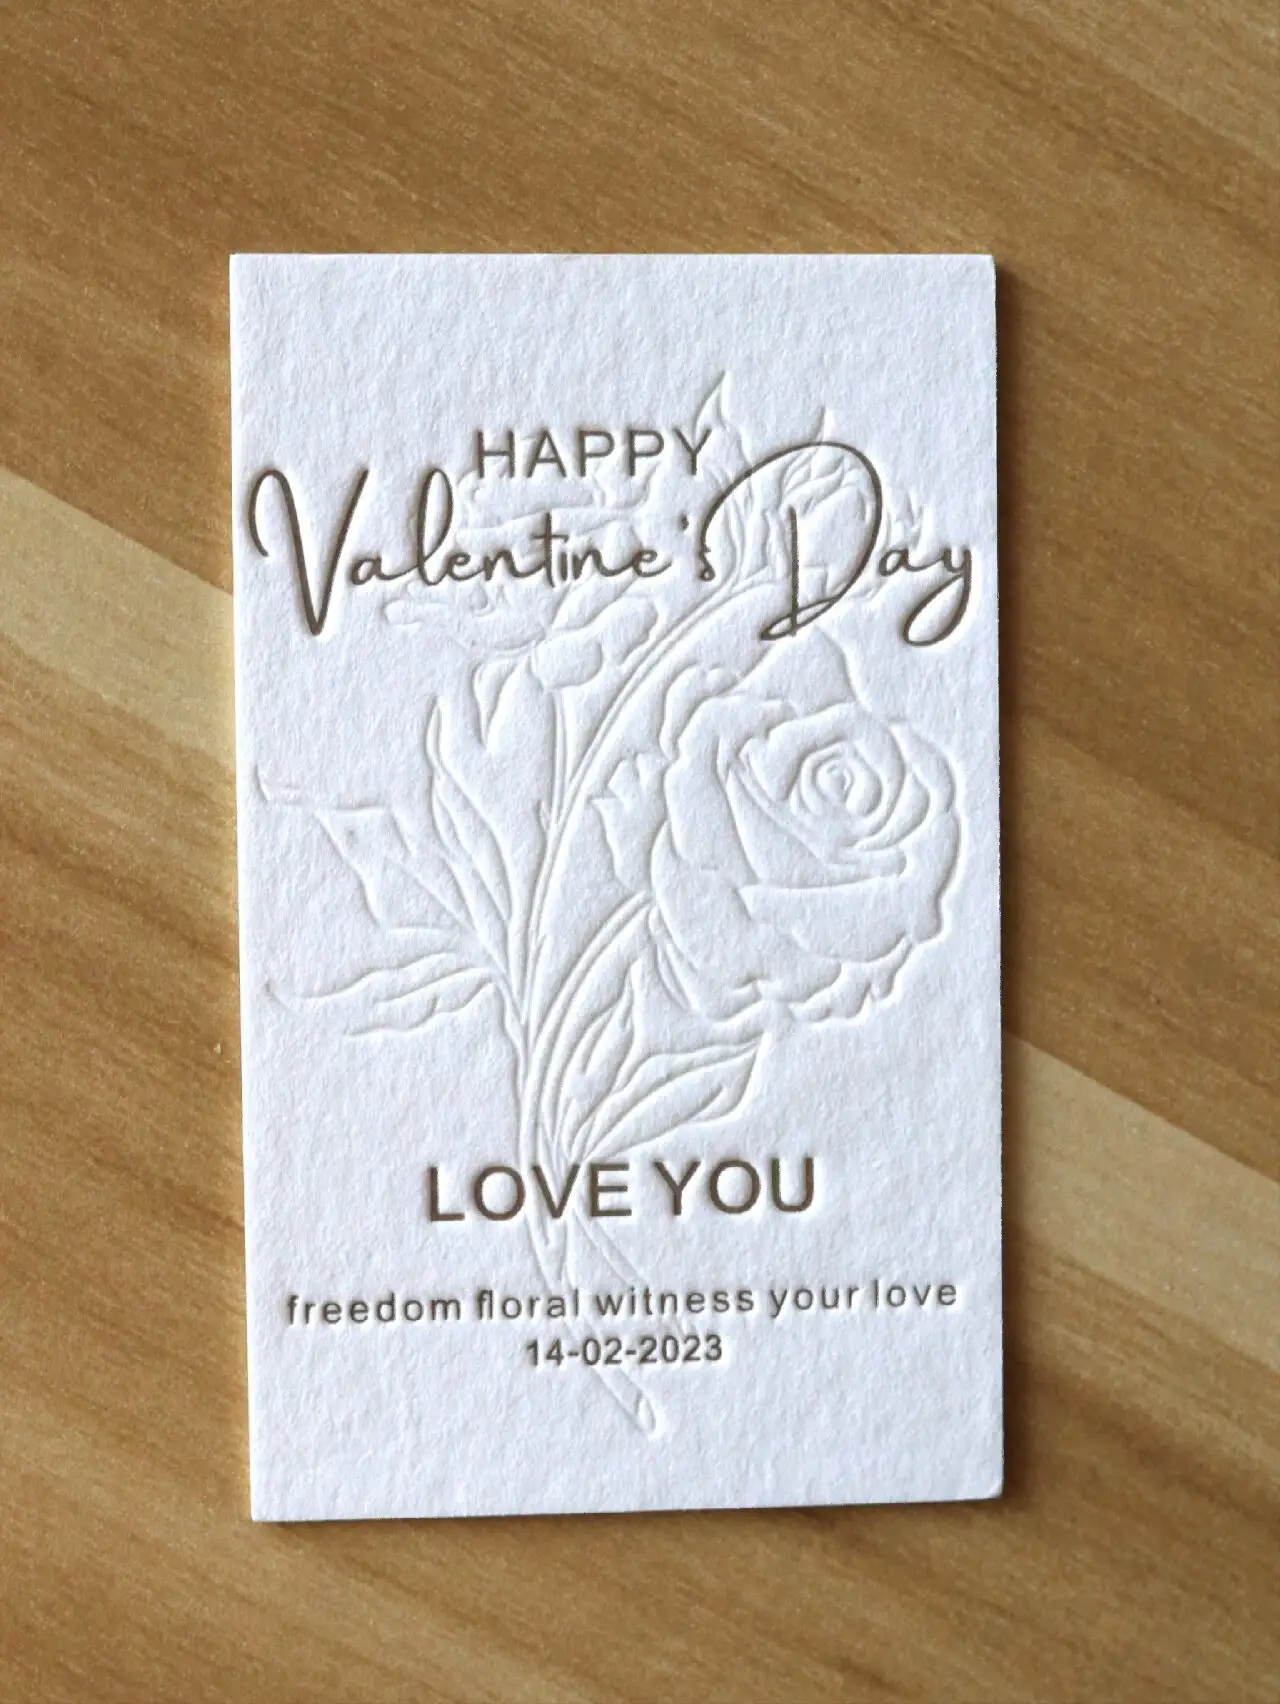 사용자 정의 도매 저렴한 인쇄 수제 열 로고 이름 행복한 사랑 선물 인사말 재미있는 카드 발렌타인 데이 카드